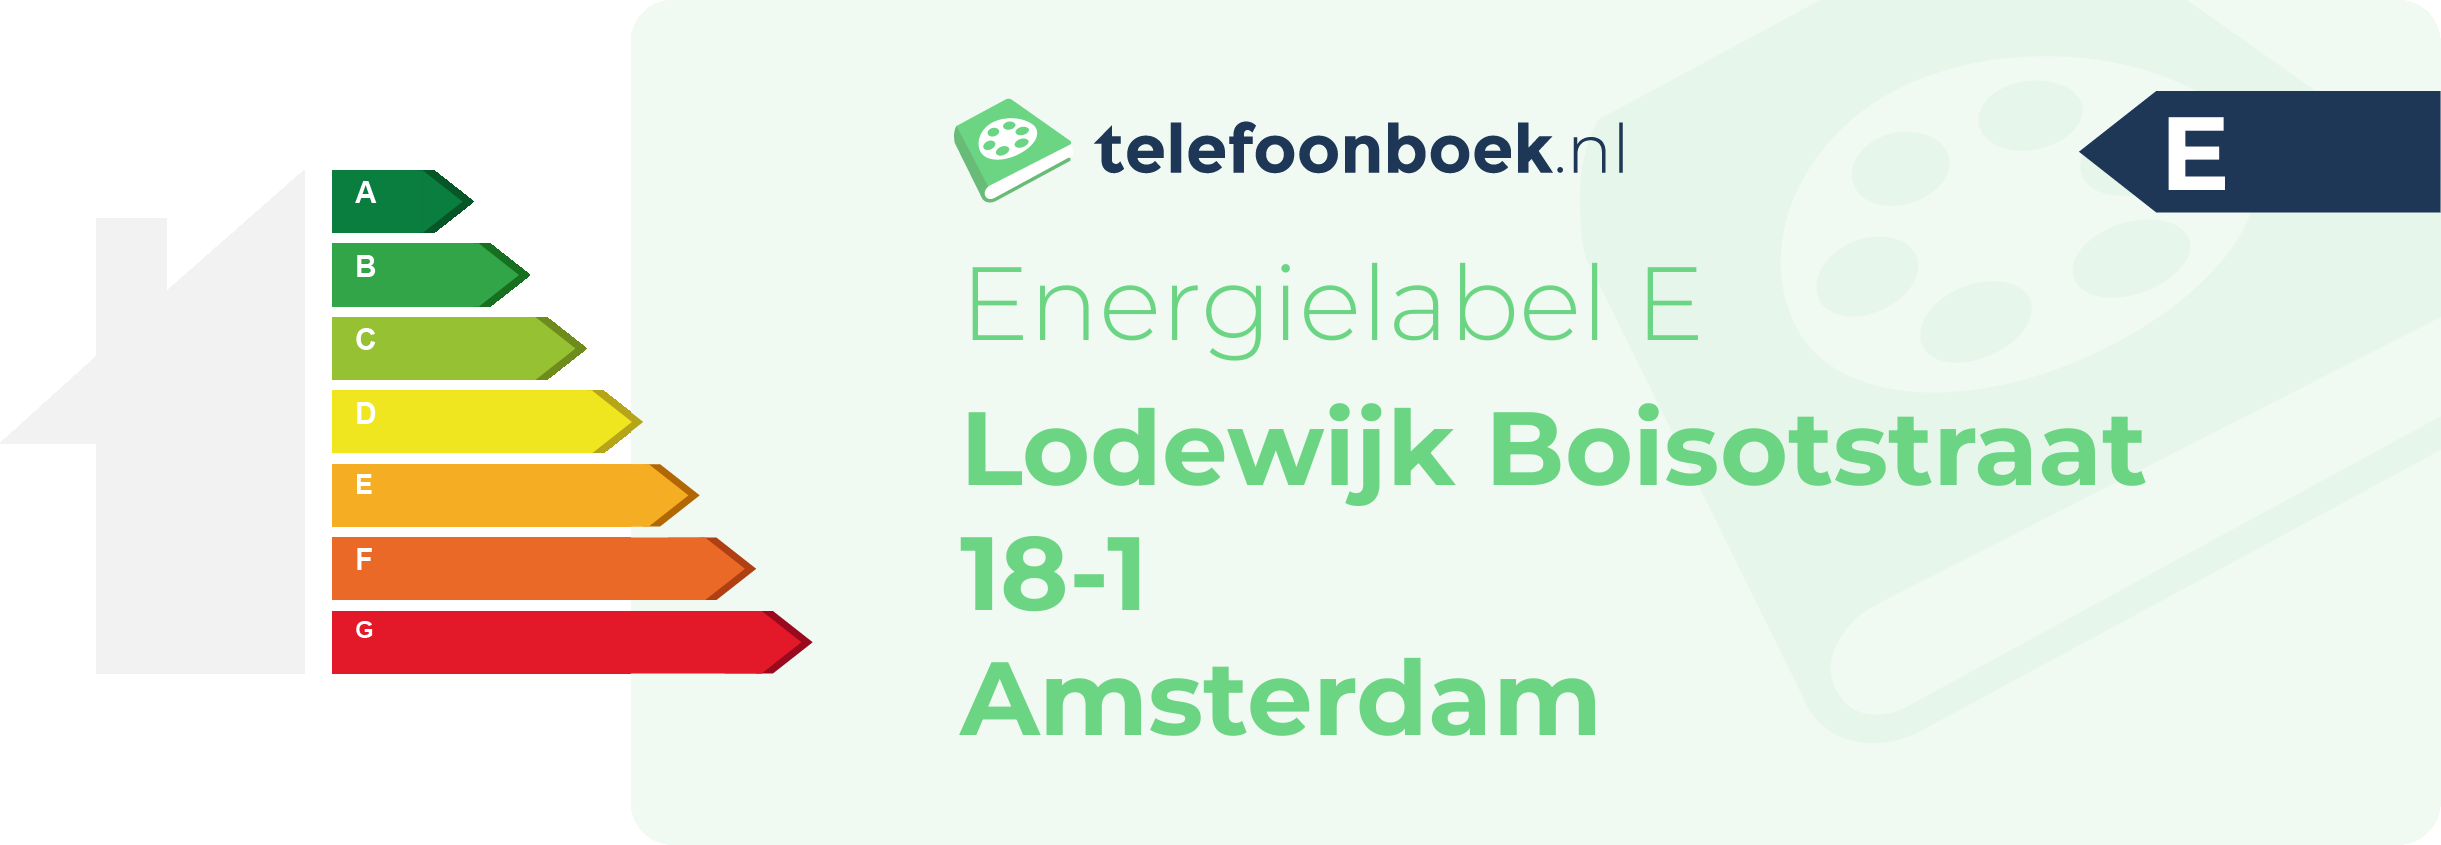 Energielabel Lodewijk Boisotstraat 18-1 Amsterdam